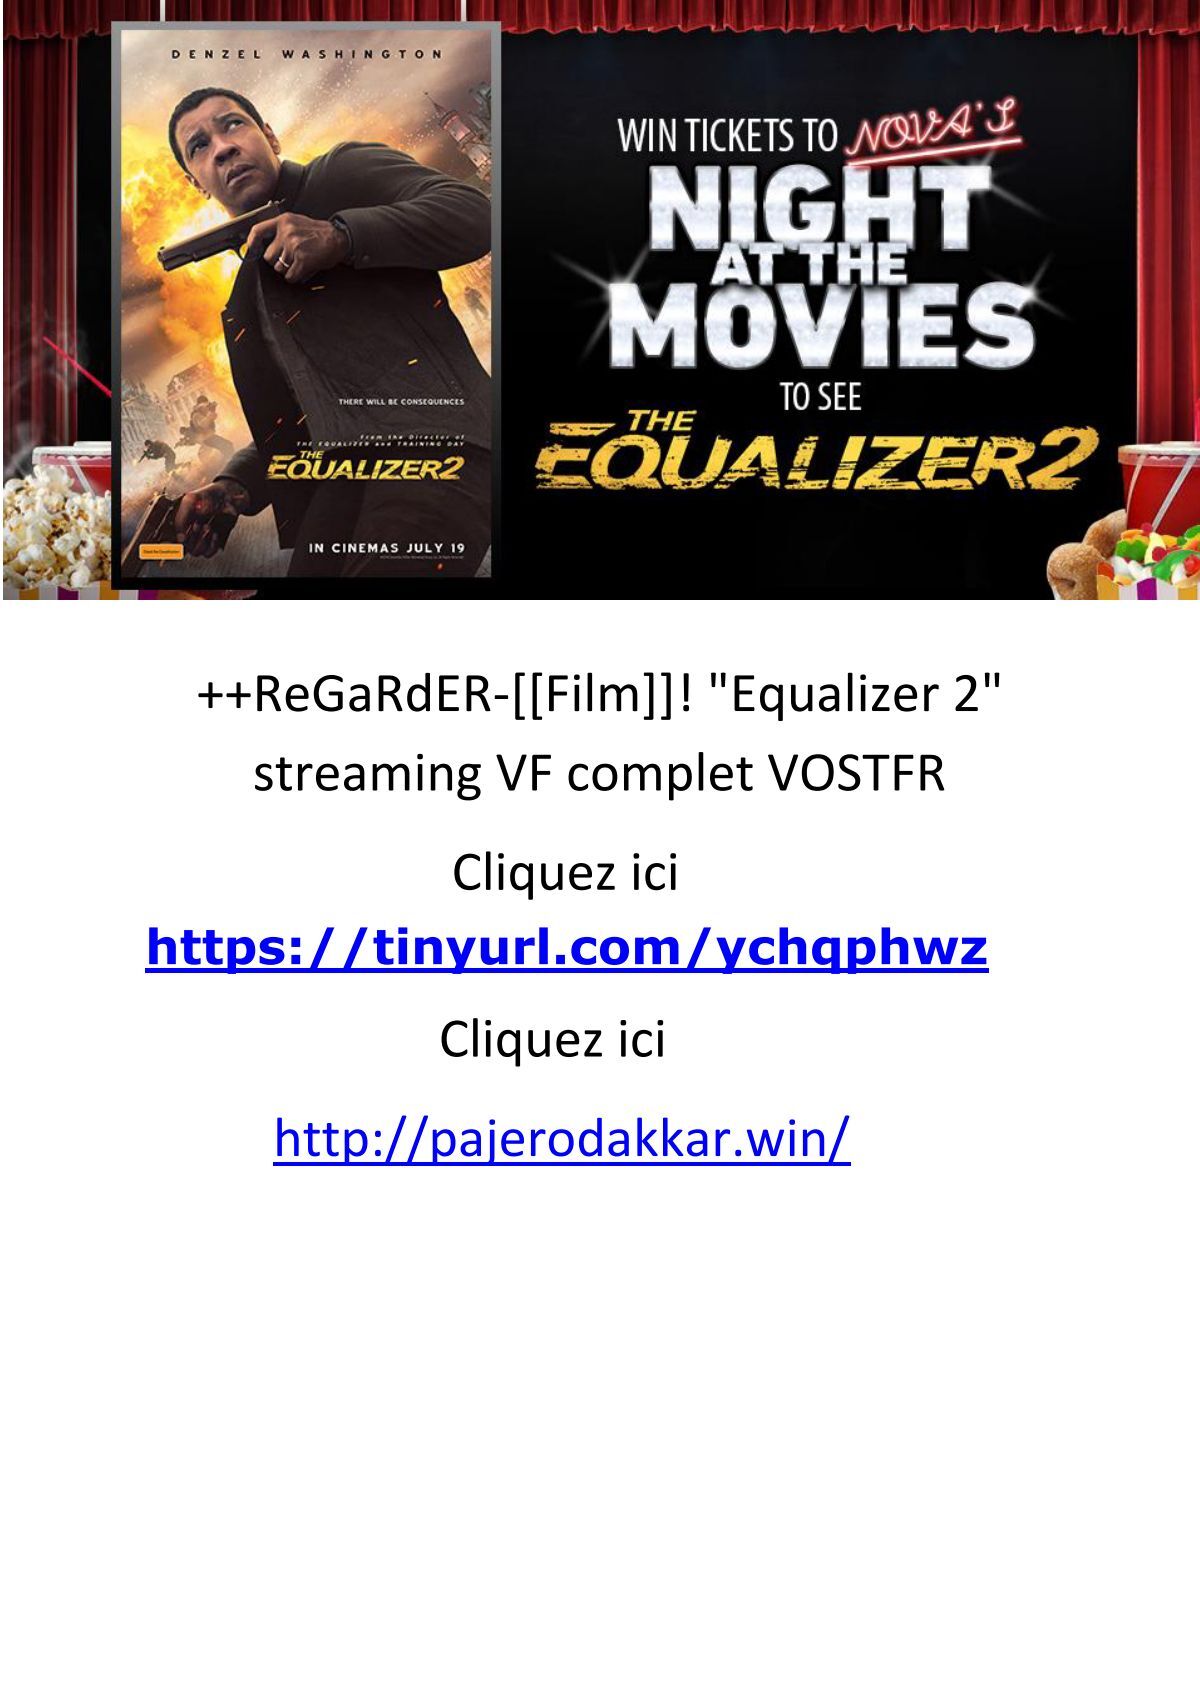 ReGaRdER-[[Film]]! Equalizer 2 streaming VF complet VOSTFR